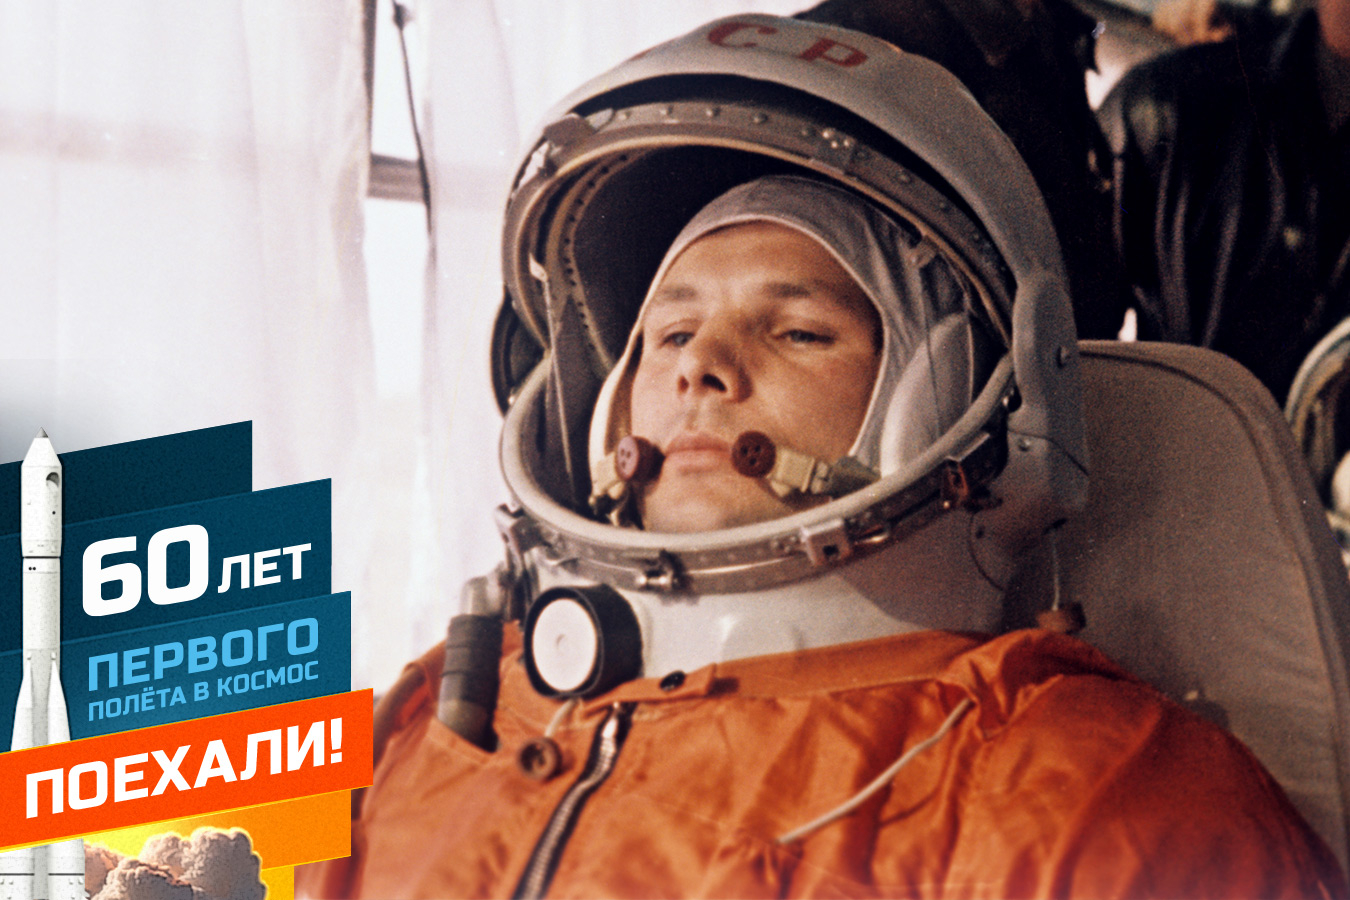 Юрий Гагарин: биография первого космонавта в истории